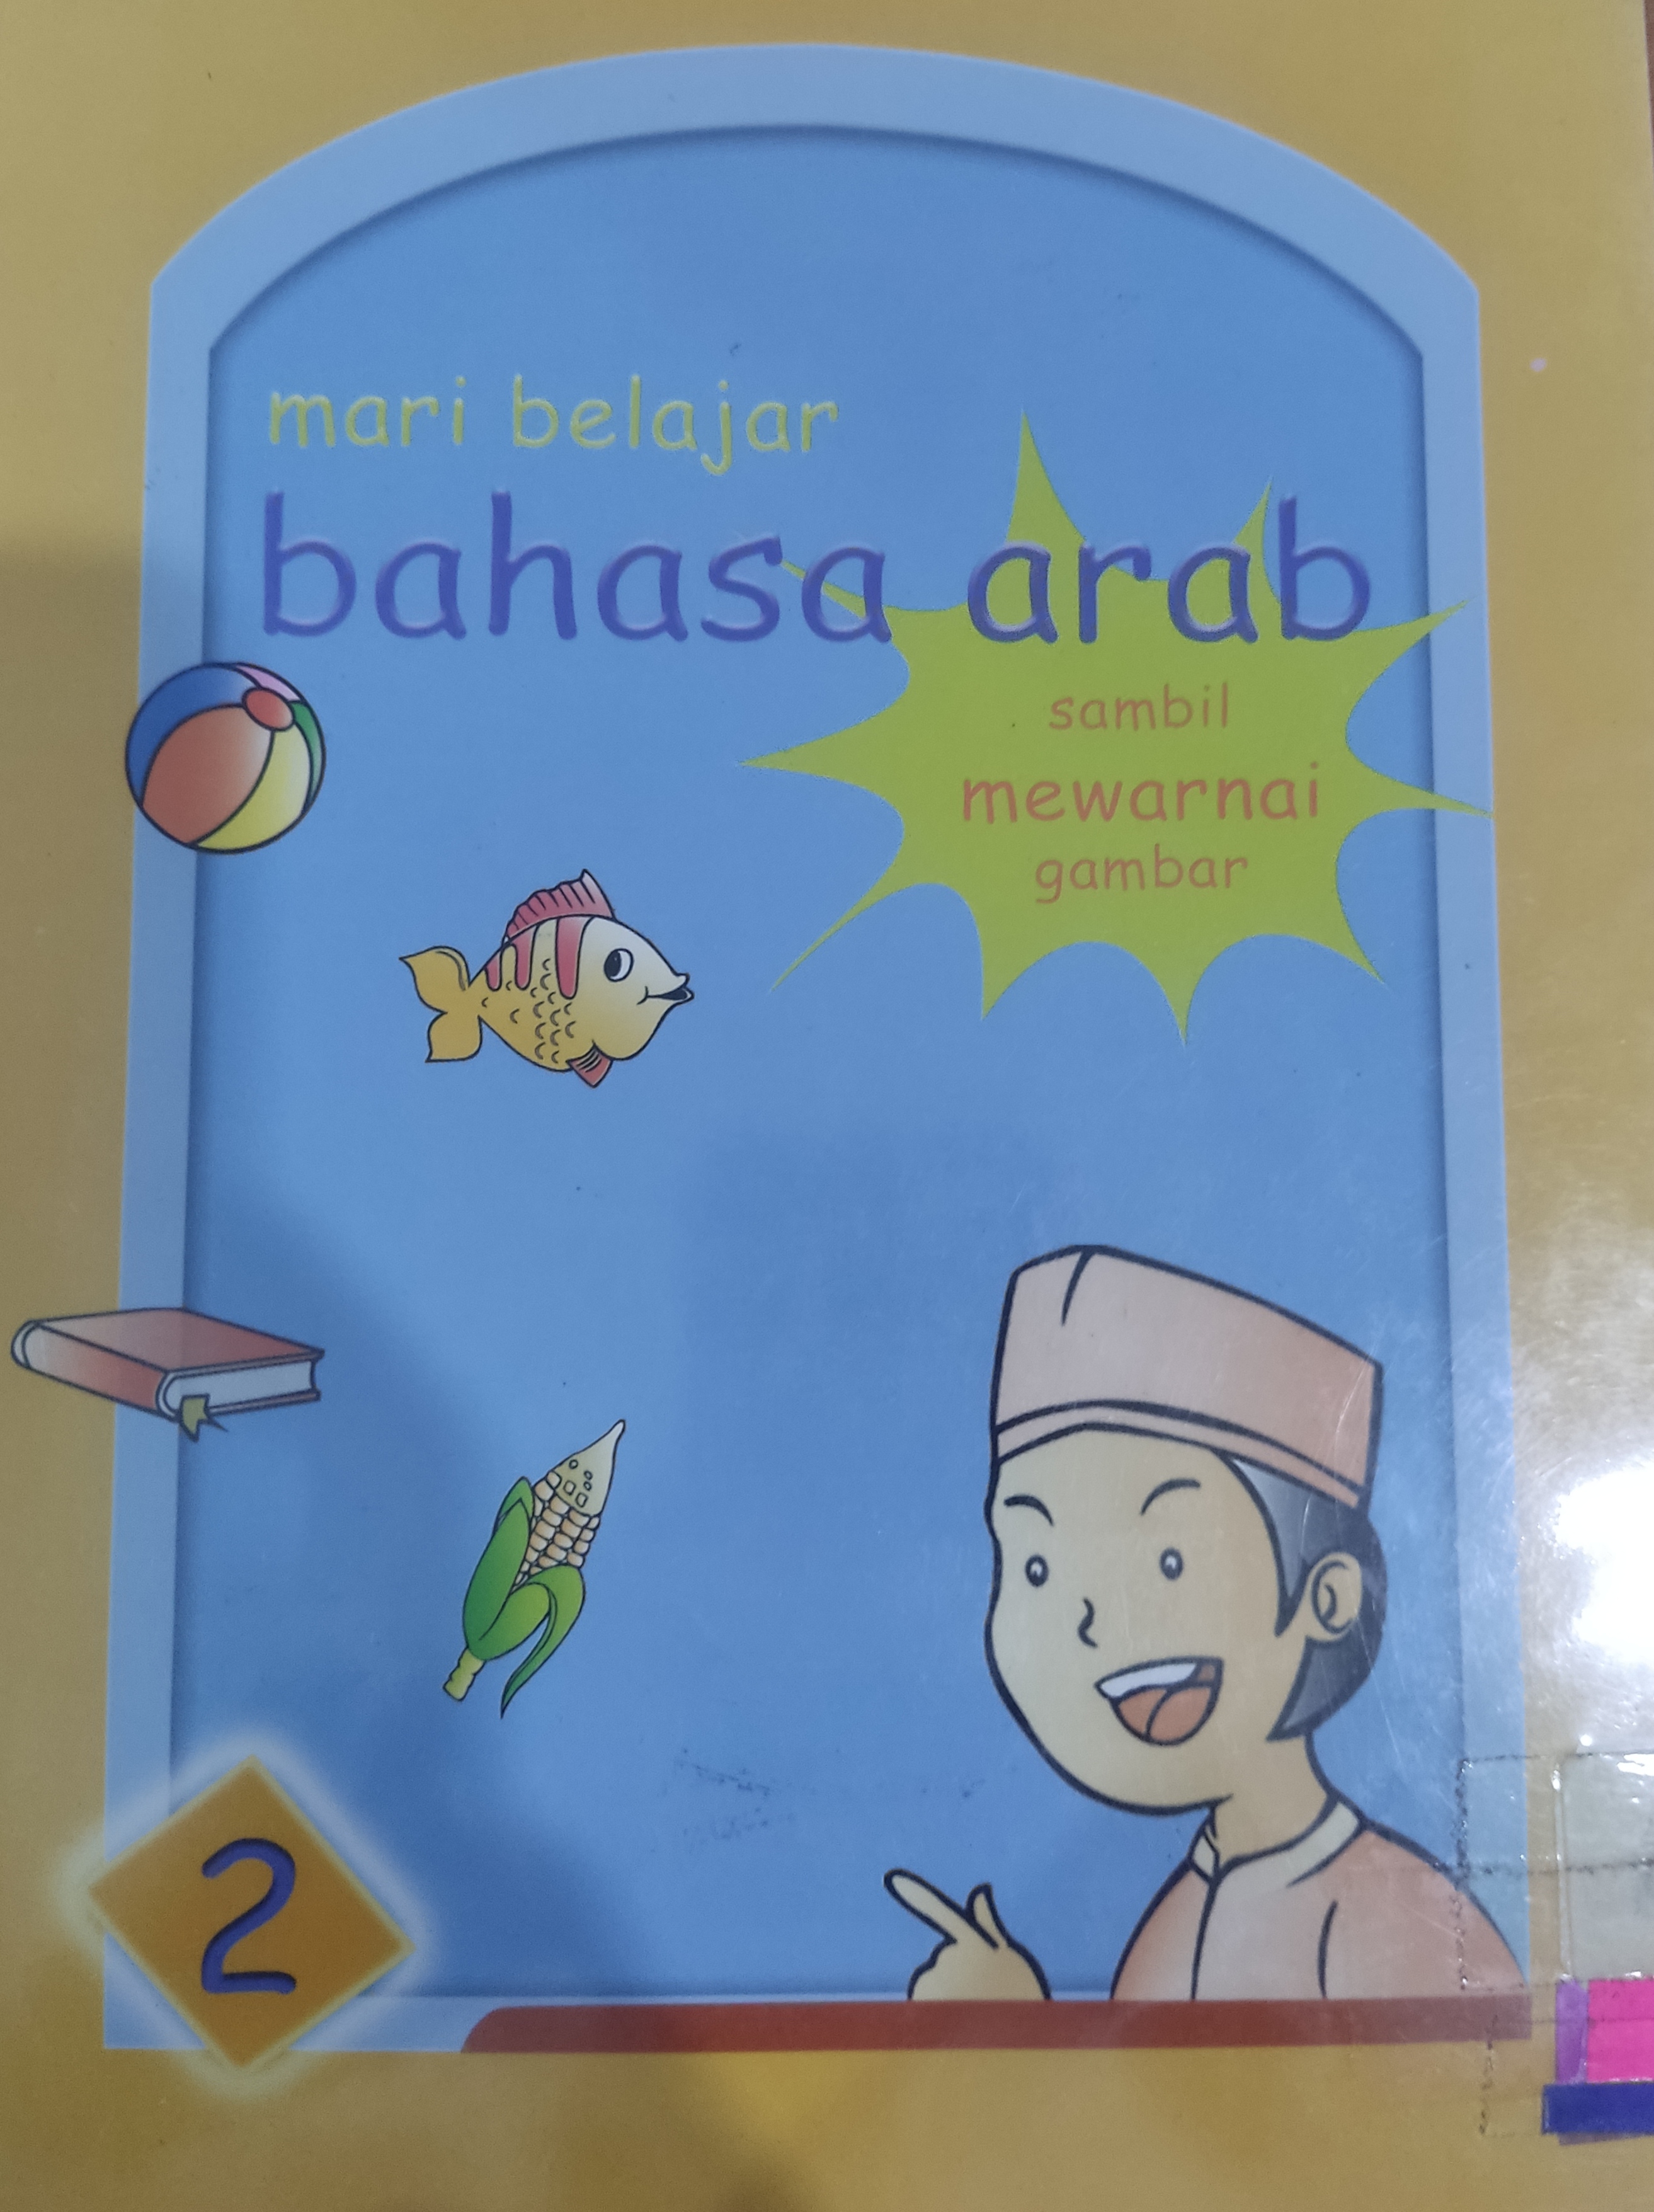 Mari belajar bahasa Arab 2 :  sambil mewarnai gambar